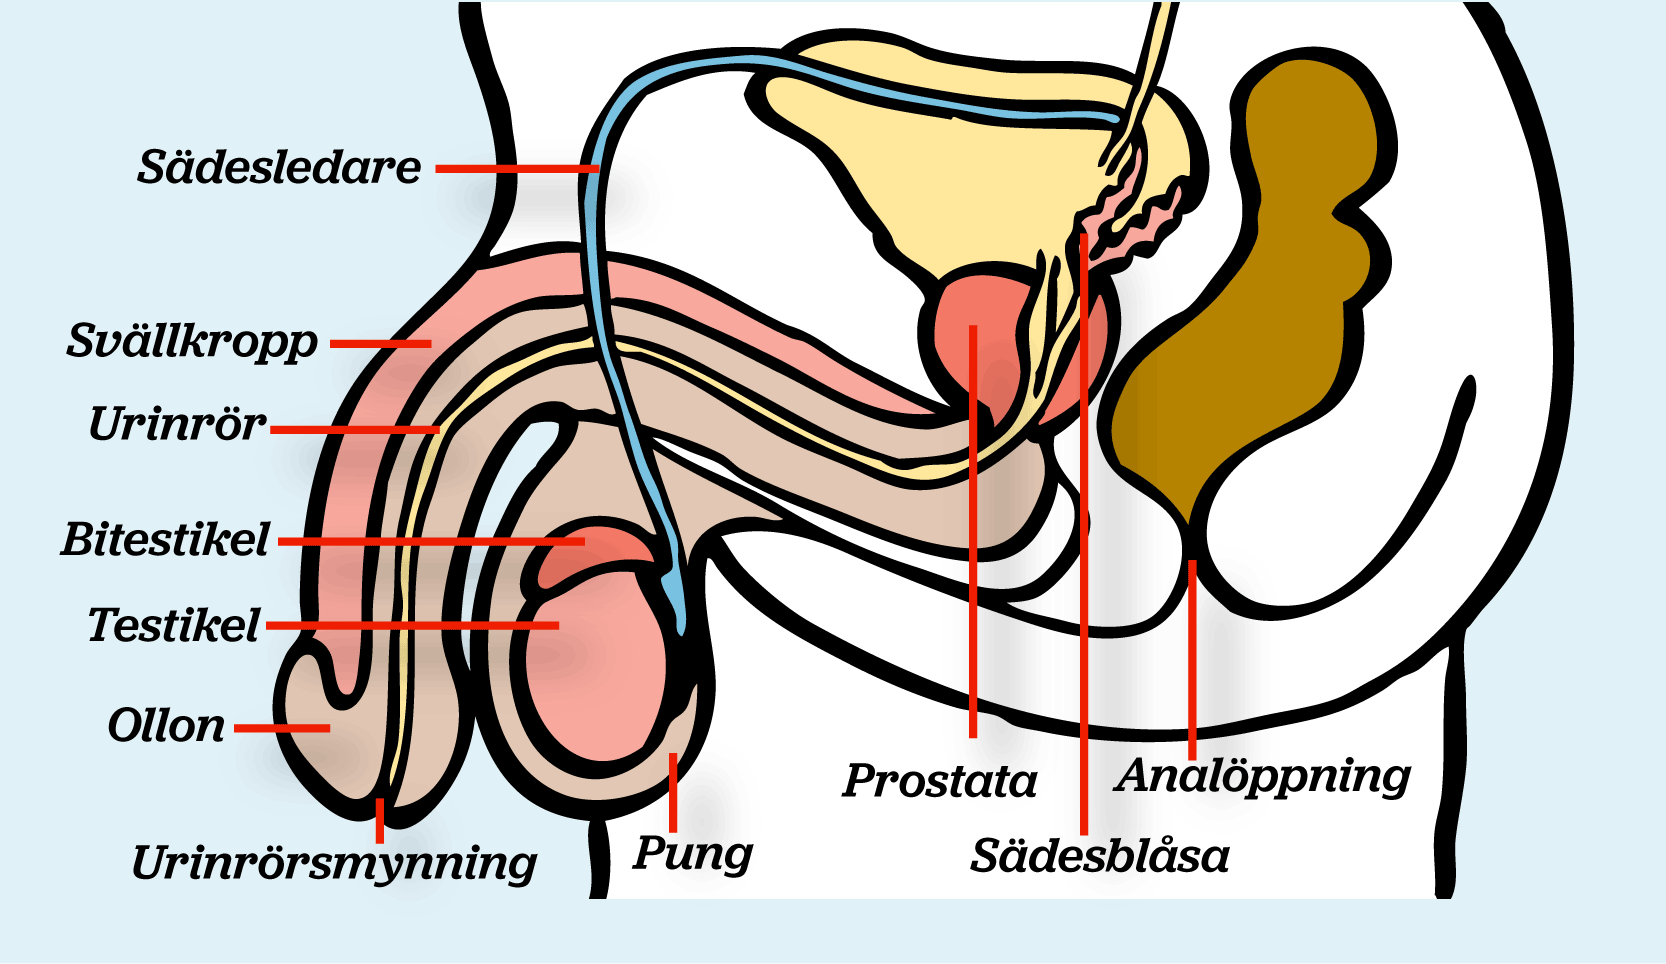 Hela könsorganet i genomskärning. Ord i bilden visar var följande delar sitter: Urinblåsa, urinrör, ollon, testikel och analöppning.